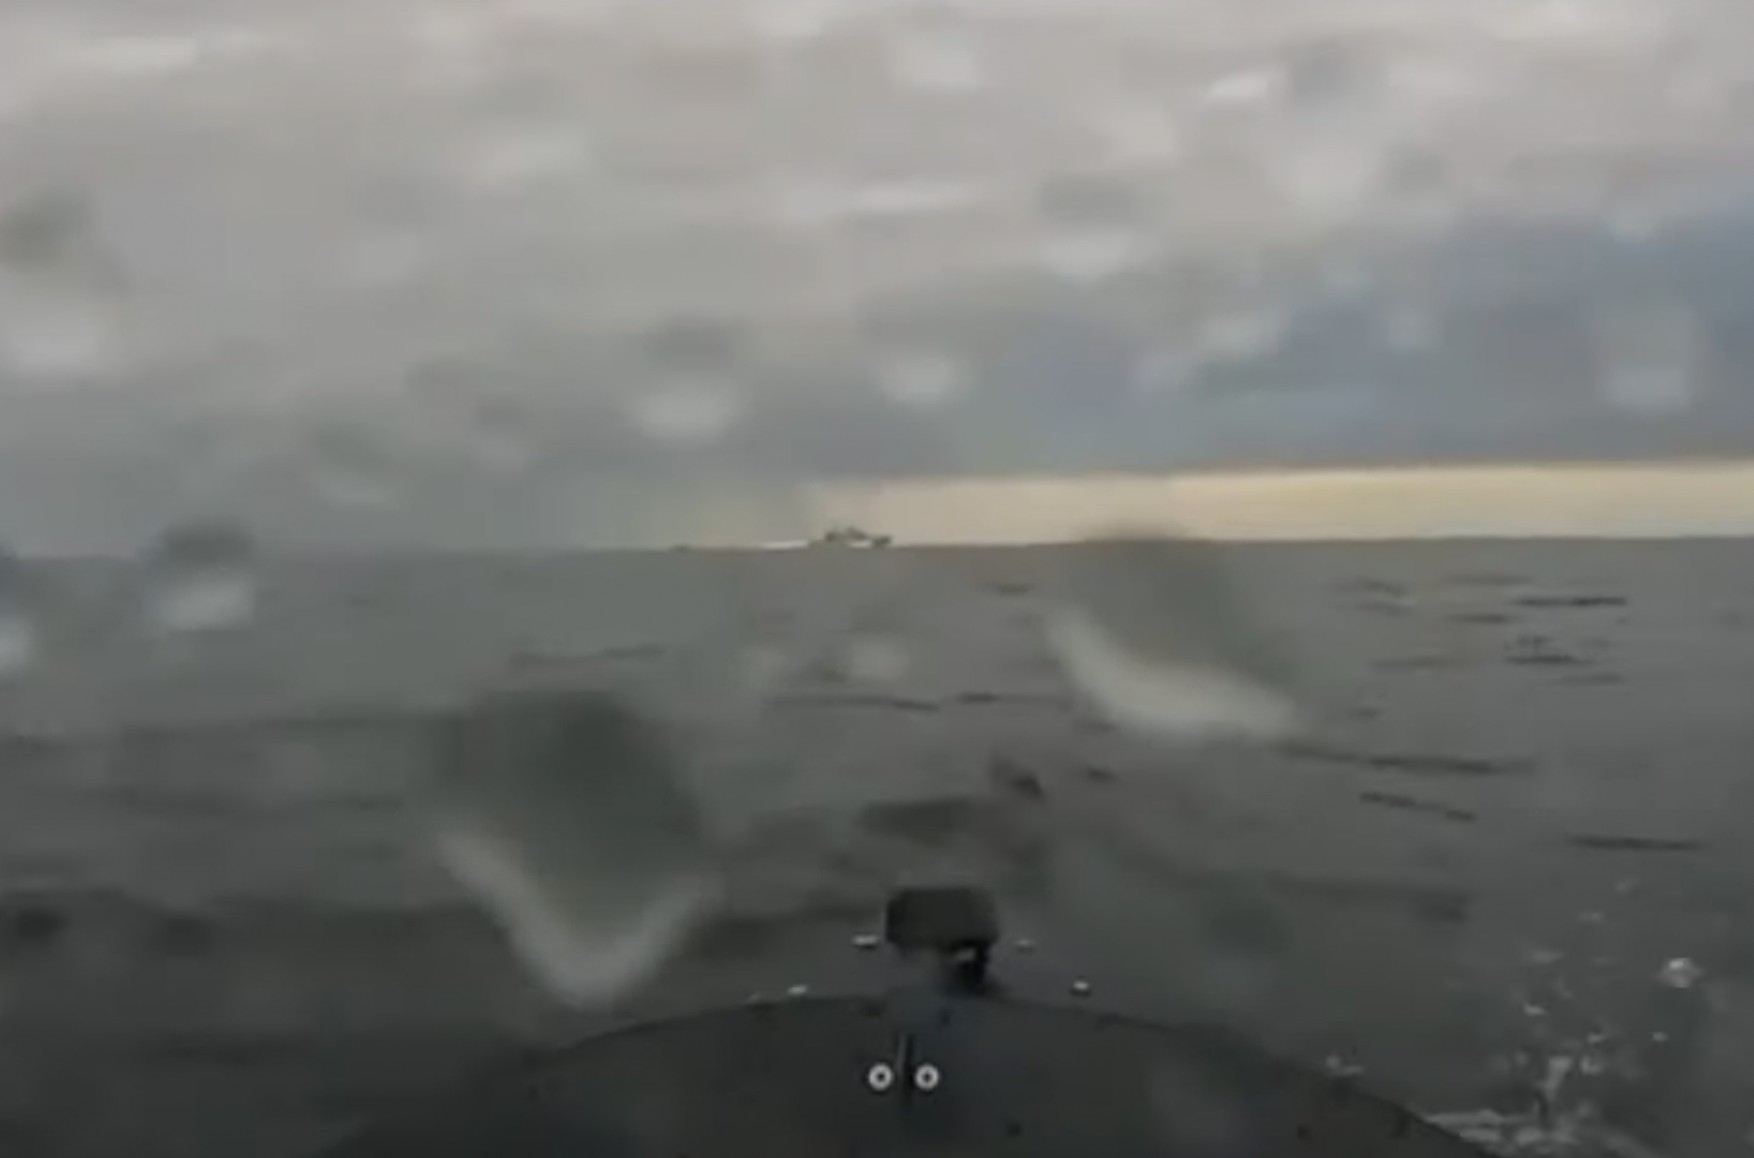 Украинские СМИ опубликовали видео атаки на корабли Черноморского флота в Севастополе